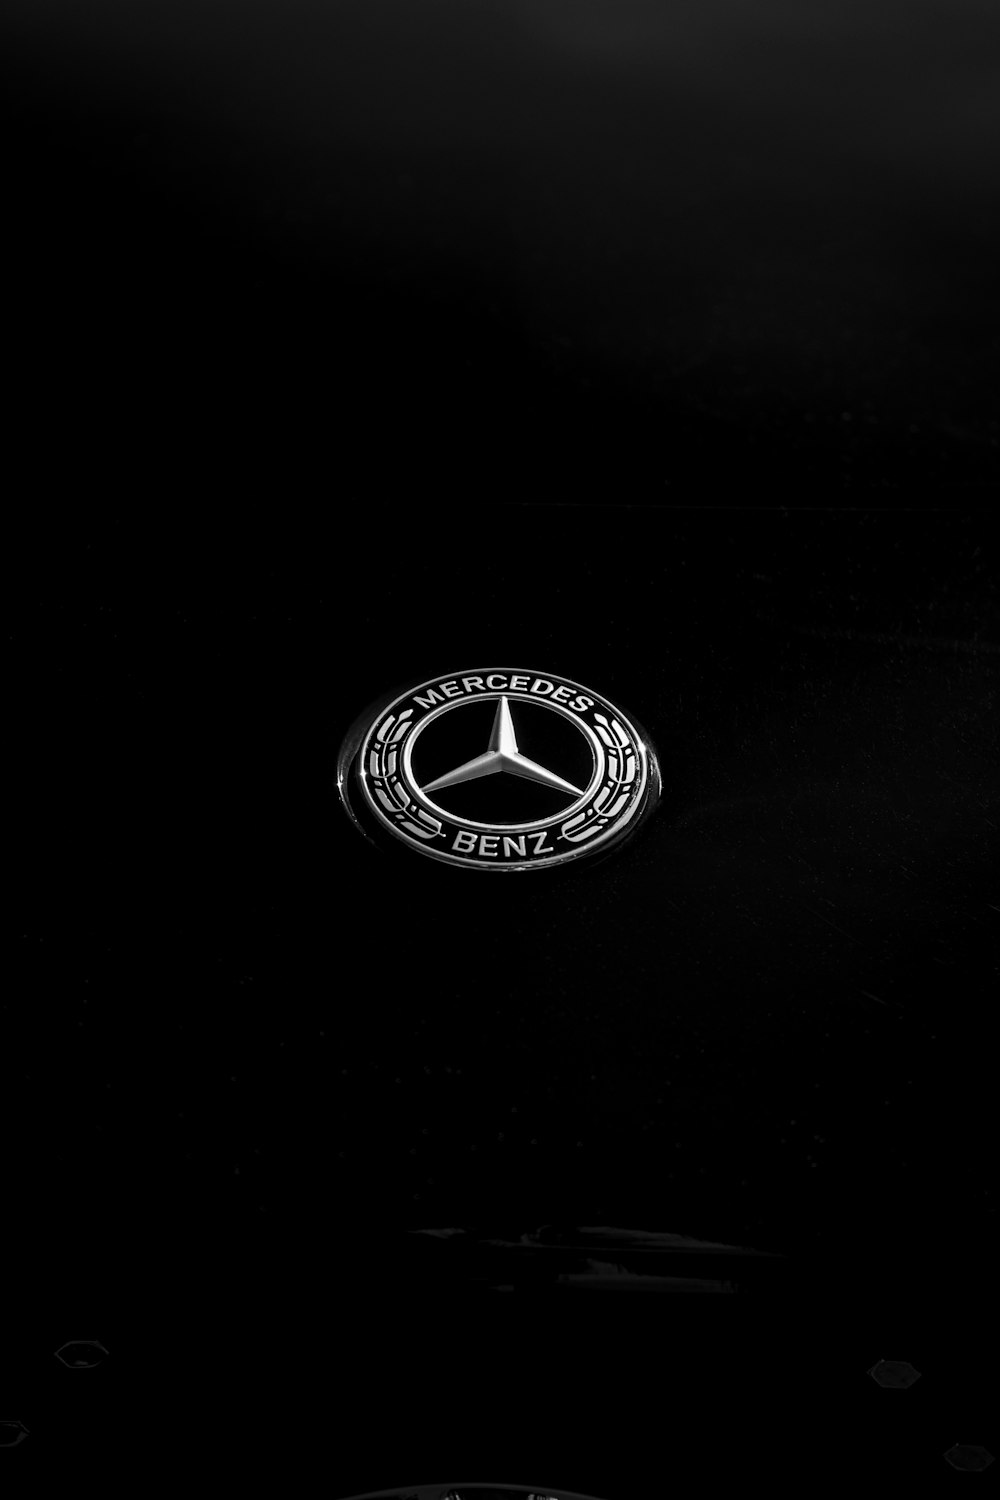 Un emblema de Mercedes se muestra en la oscuridad